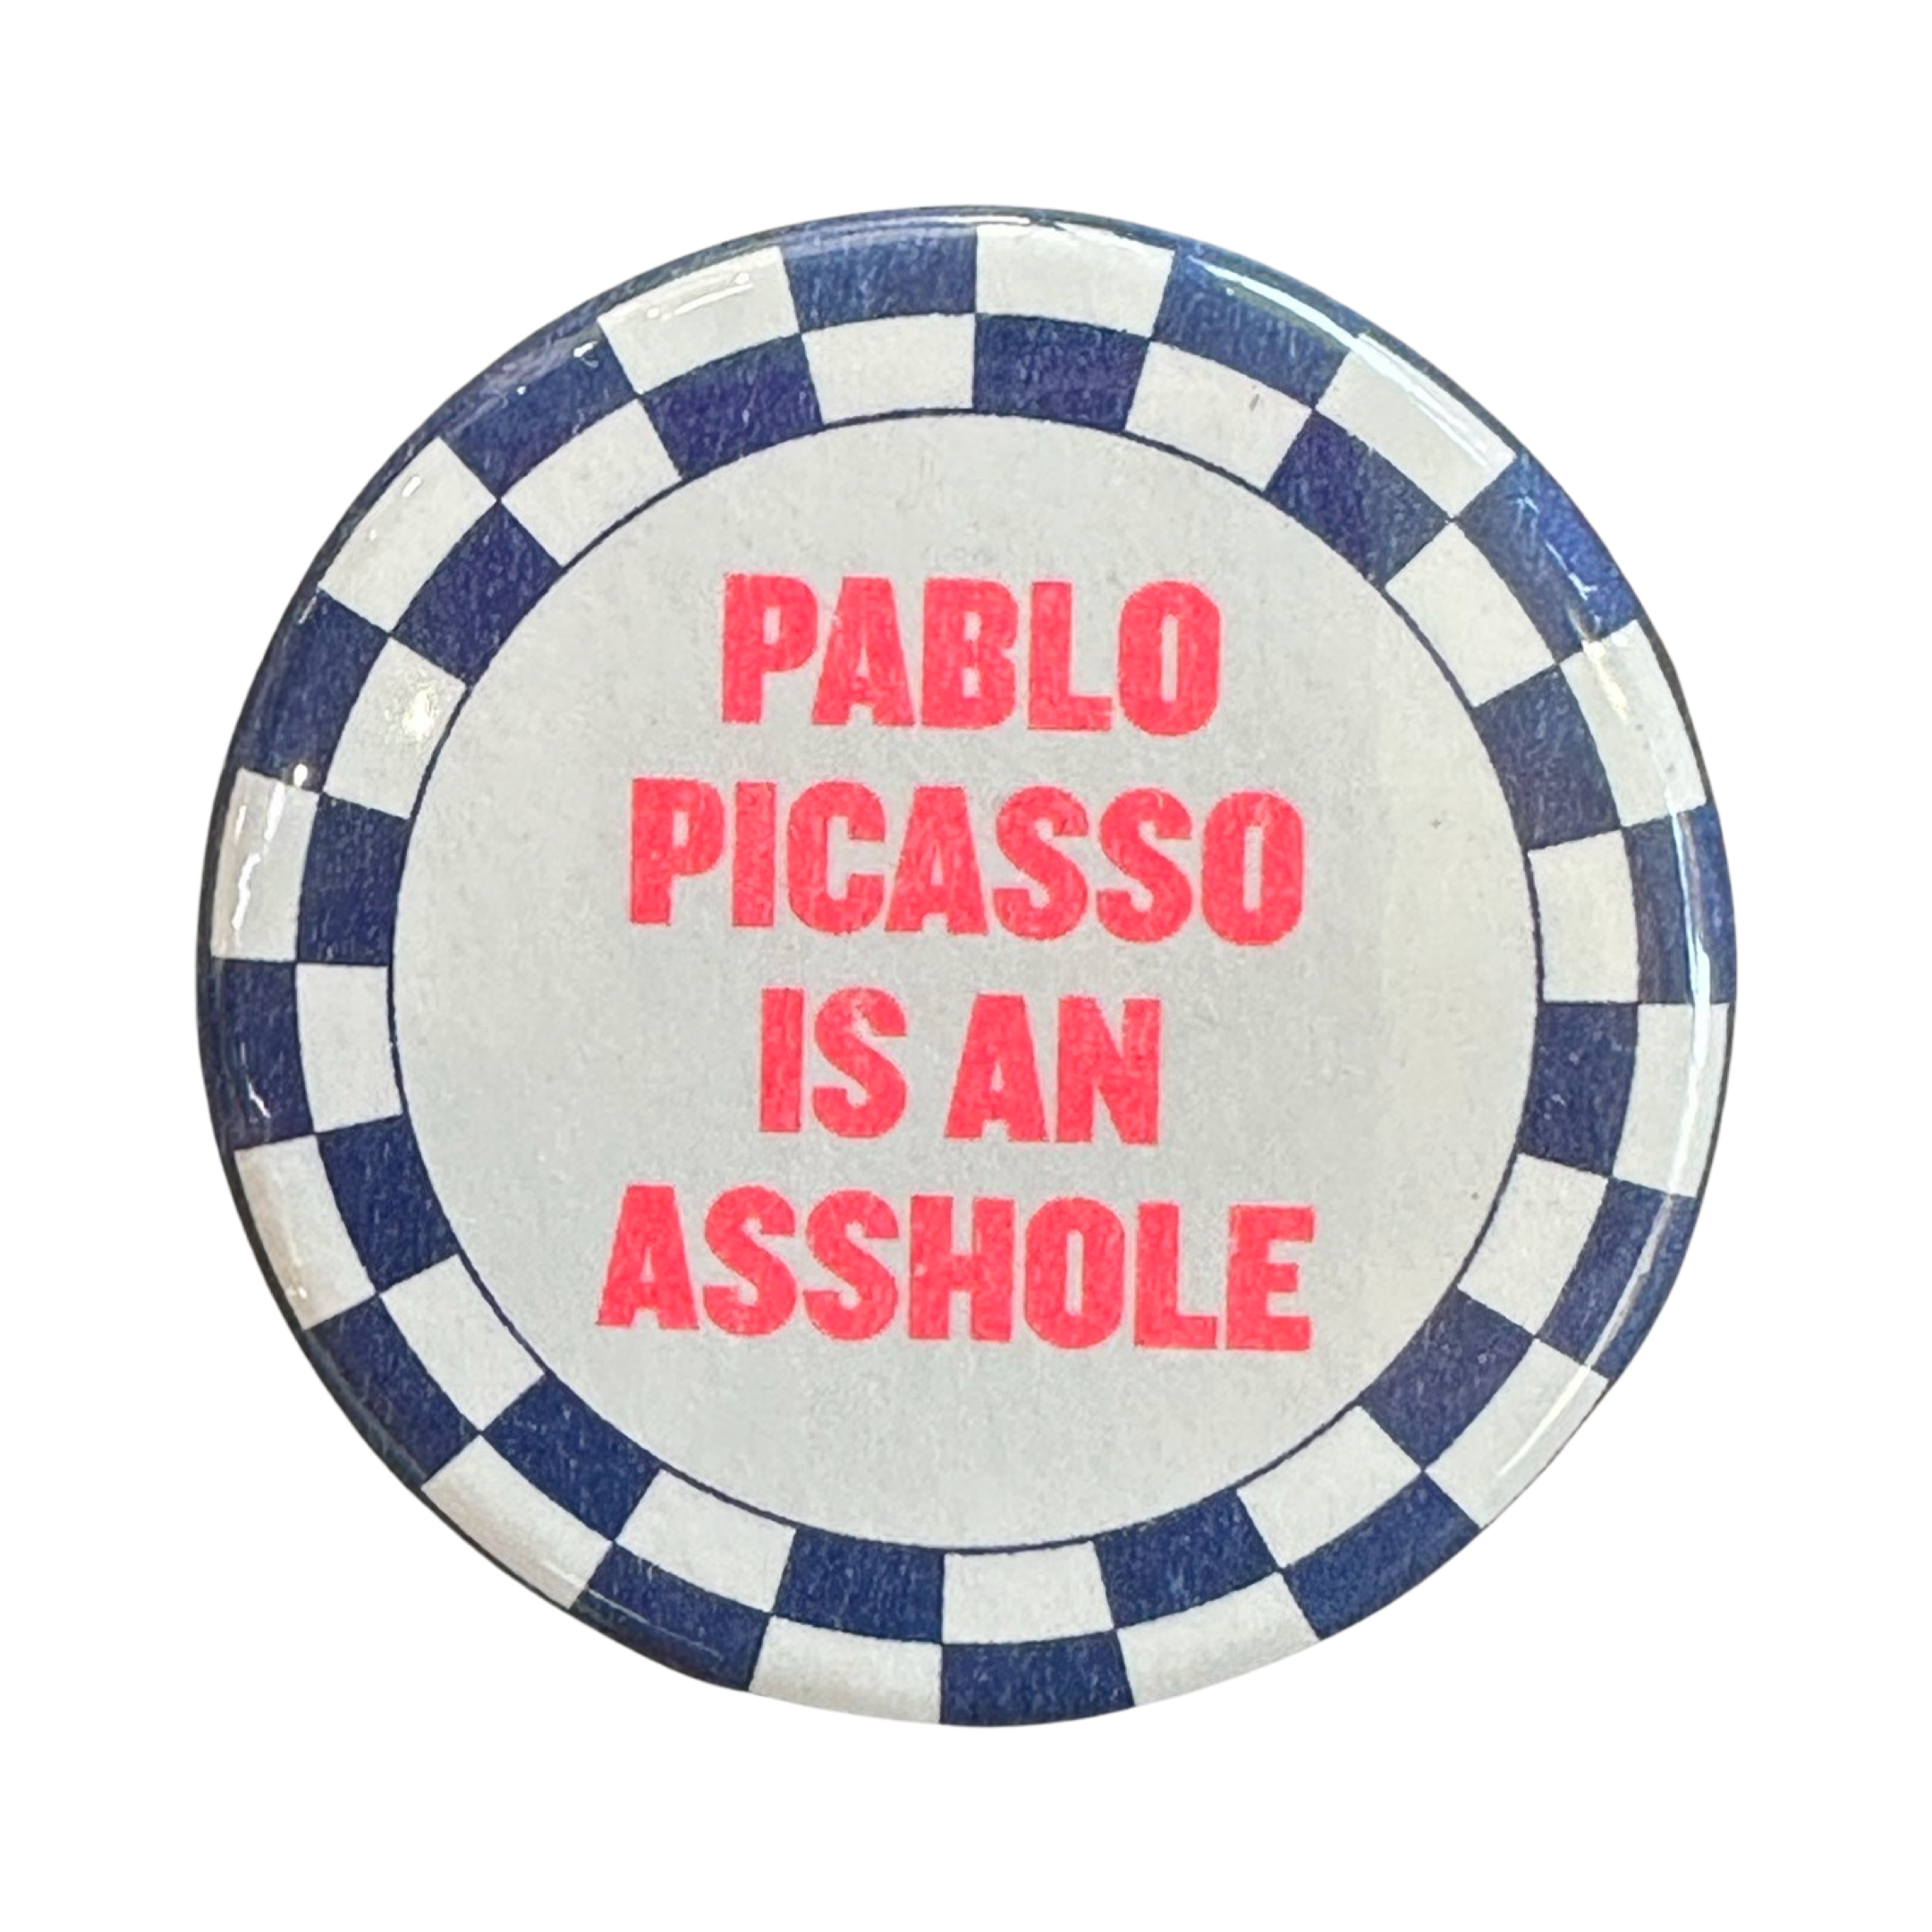 Pablo Picasso Button